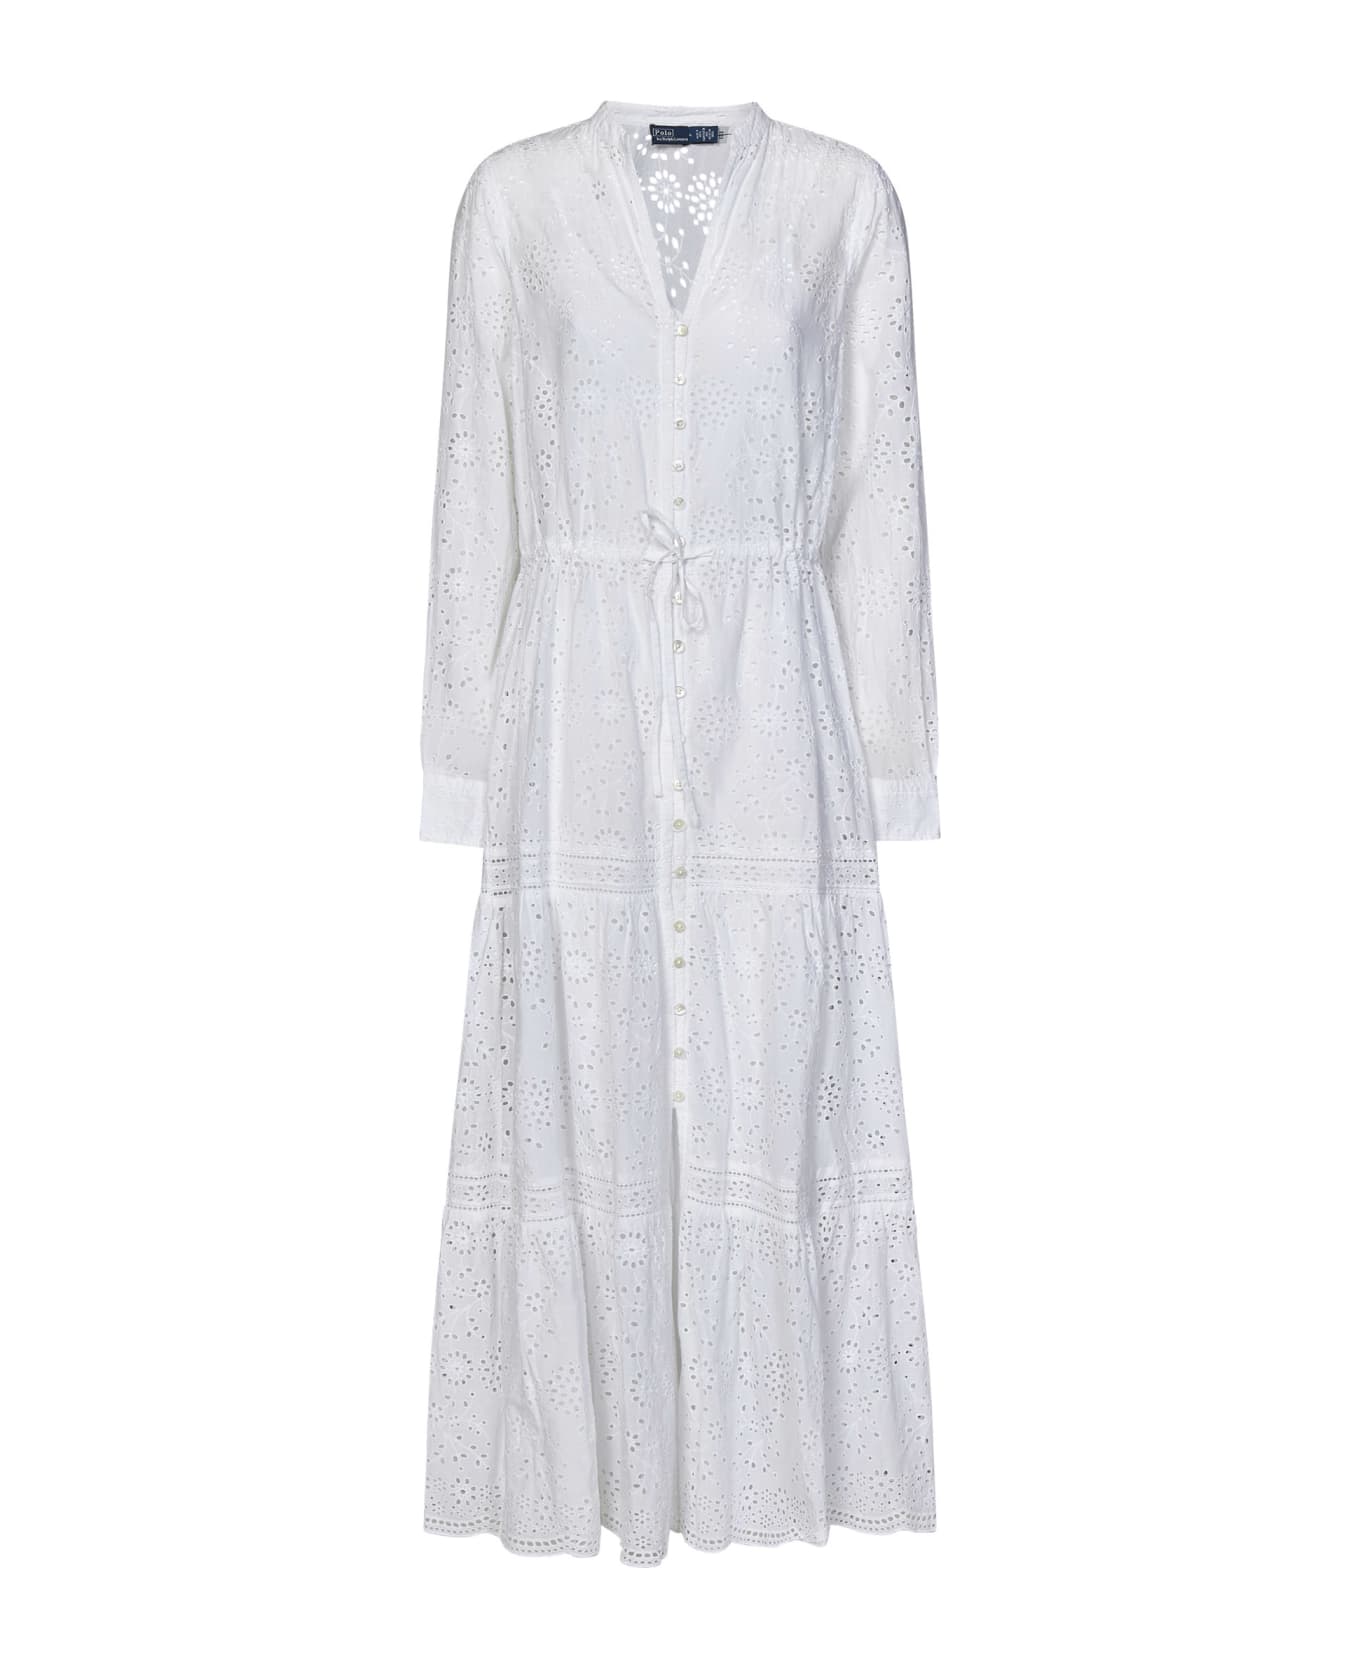 Polo Ralph Lauren Ralph Lauren Dress - White